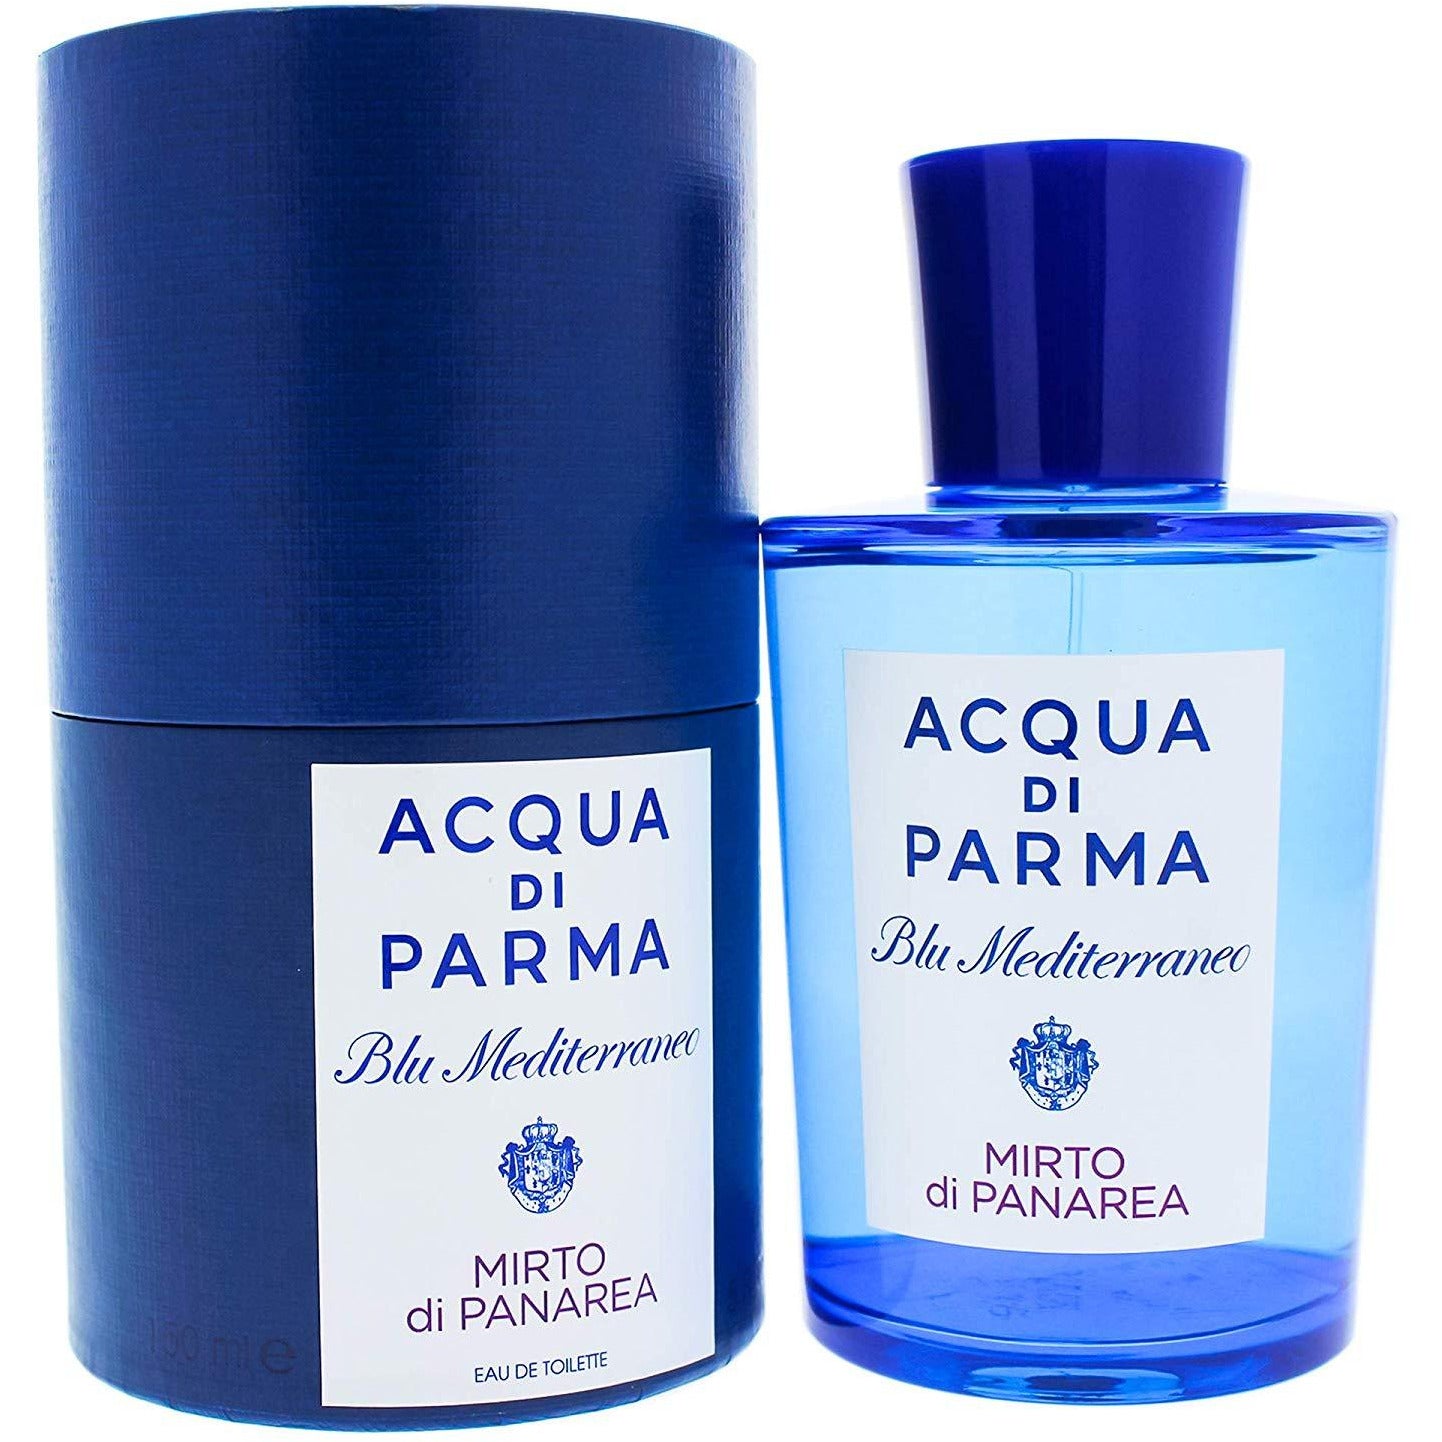 perfume acqua di parma blu mediterraneo mirto panaera